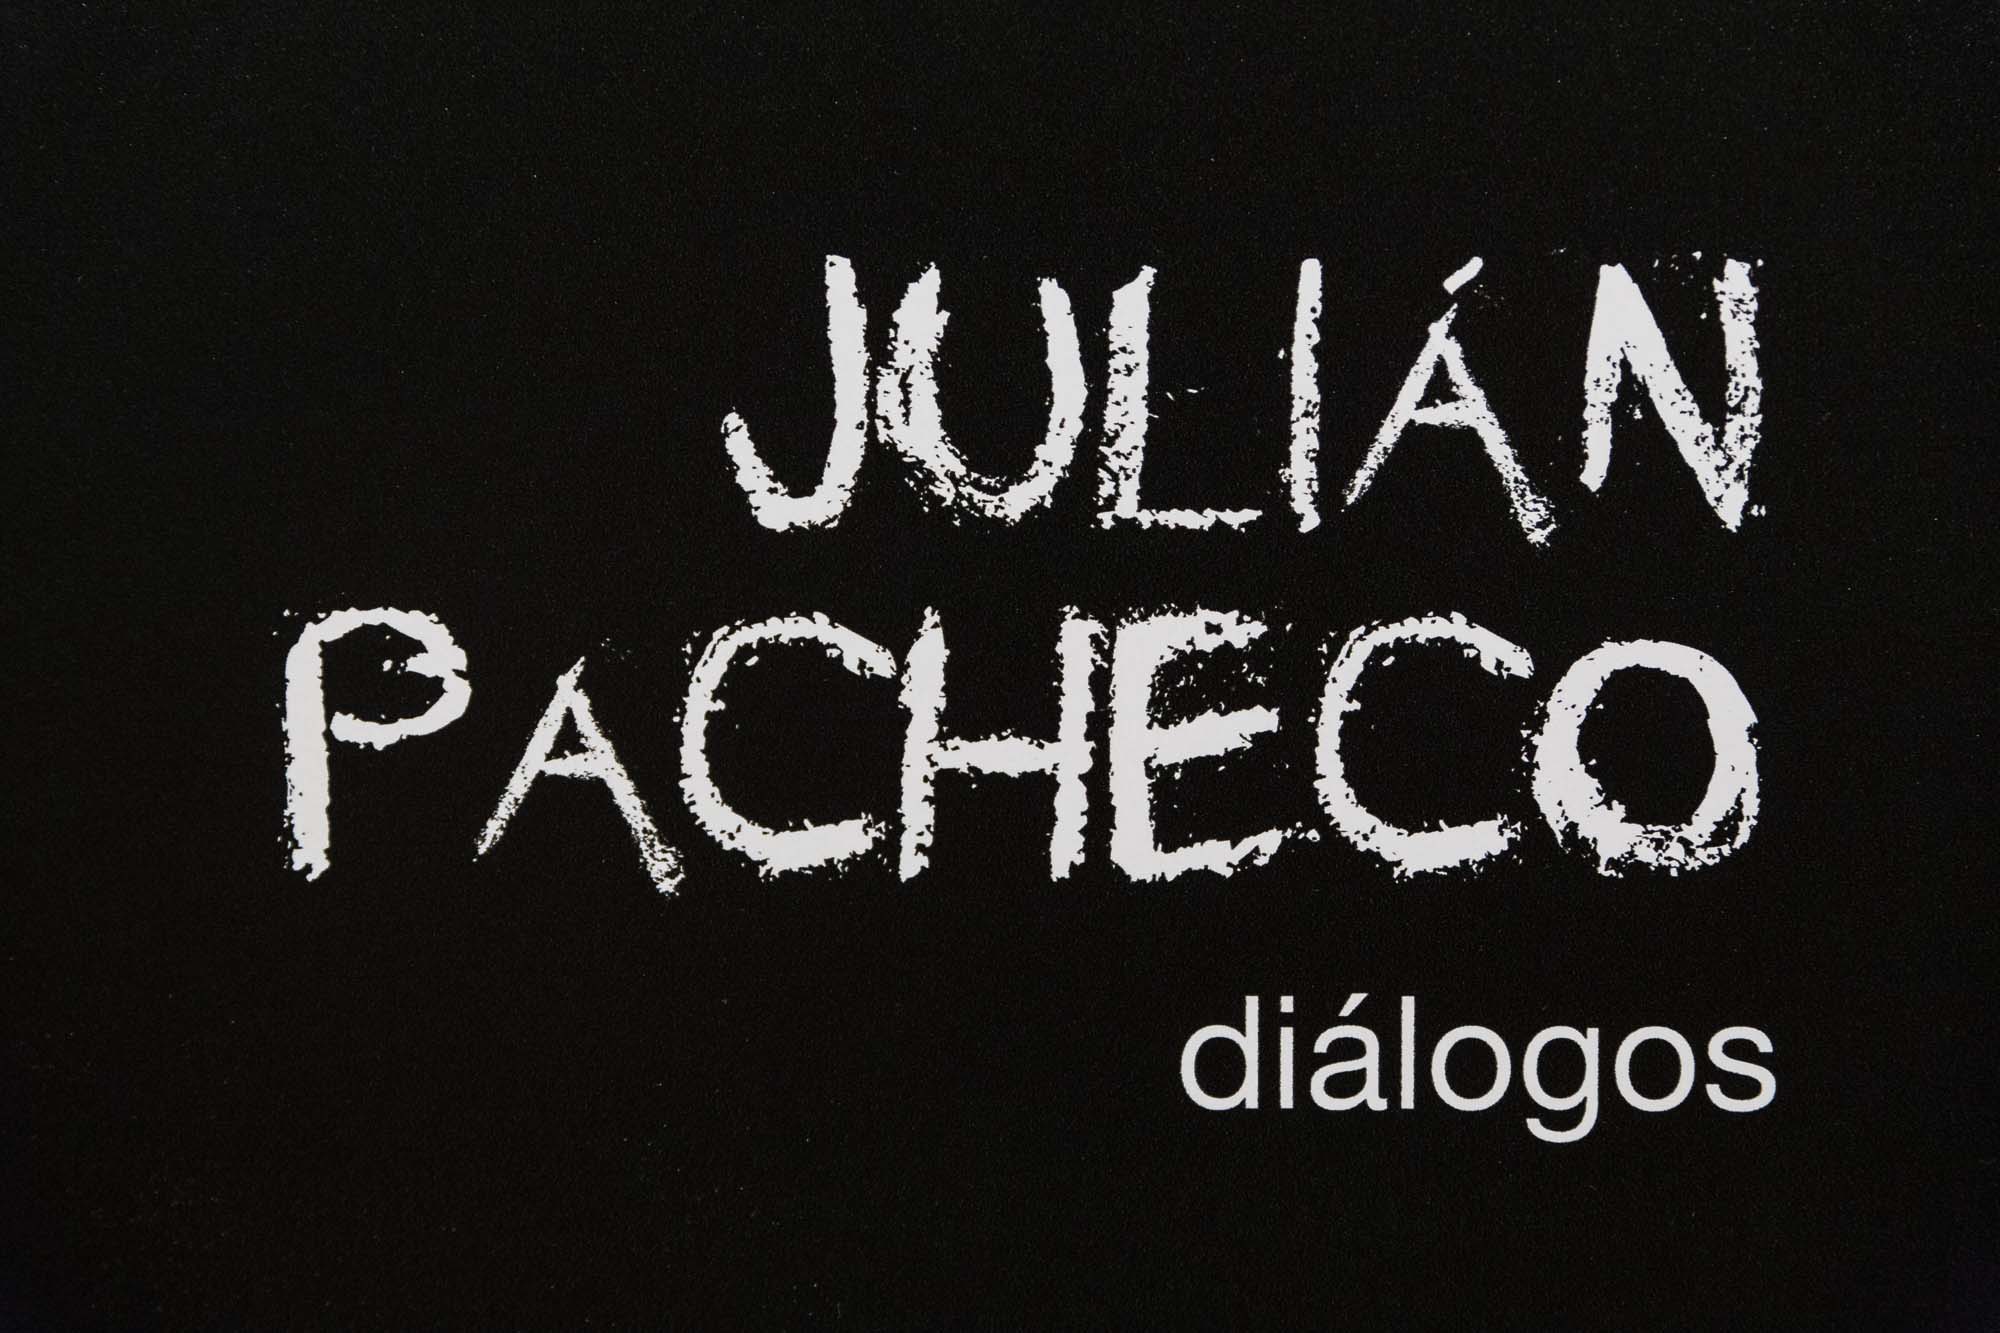 Julian Pacheco "Diálogos"